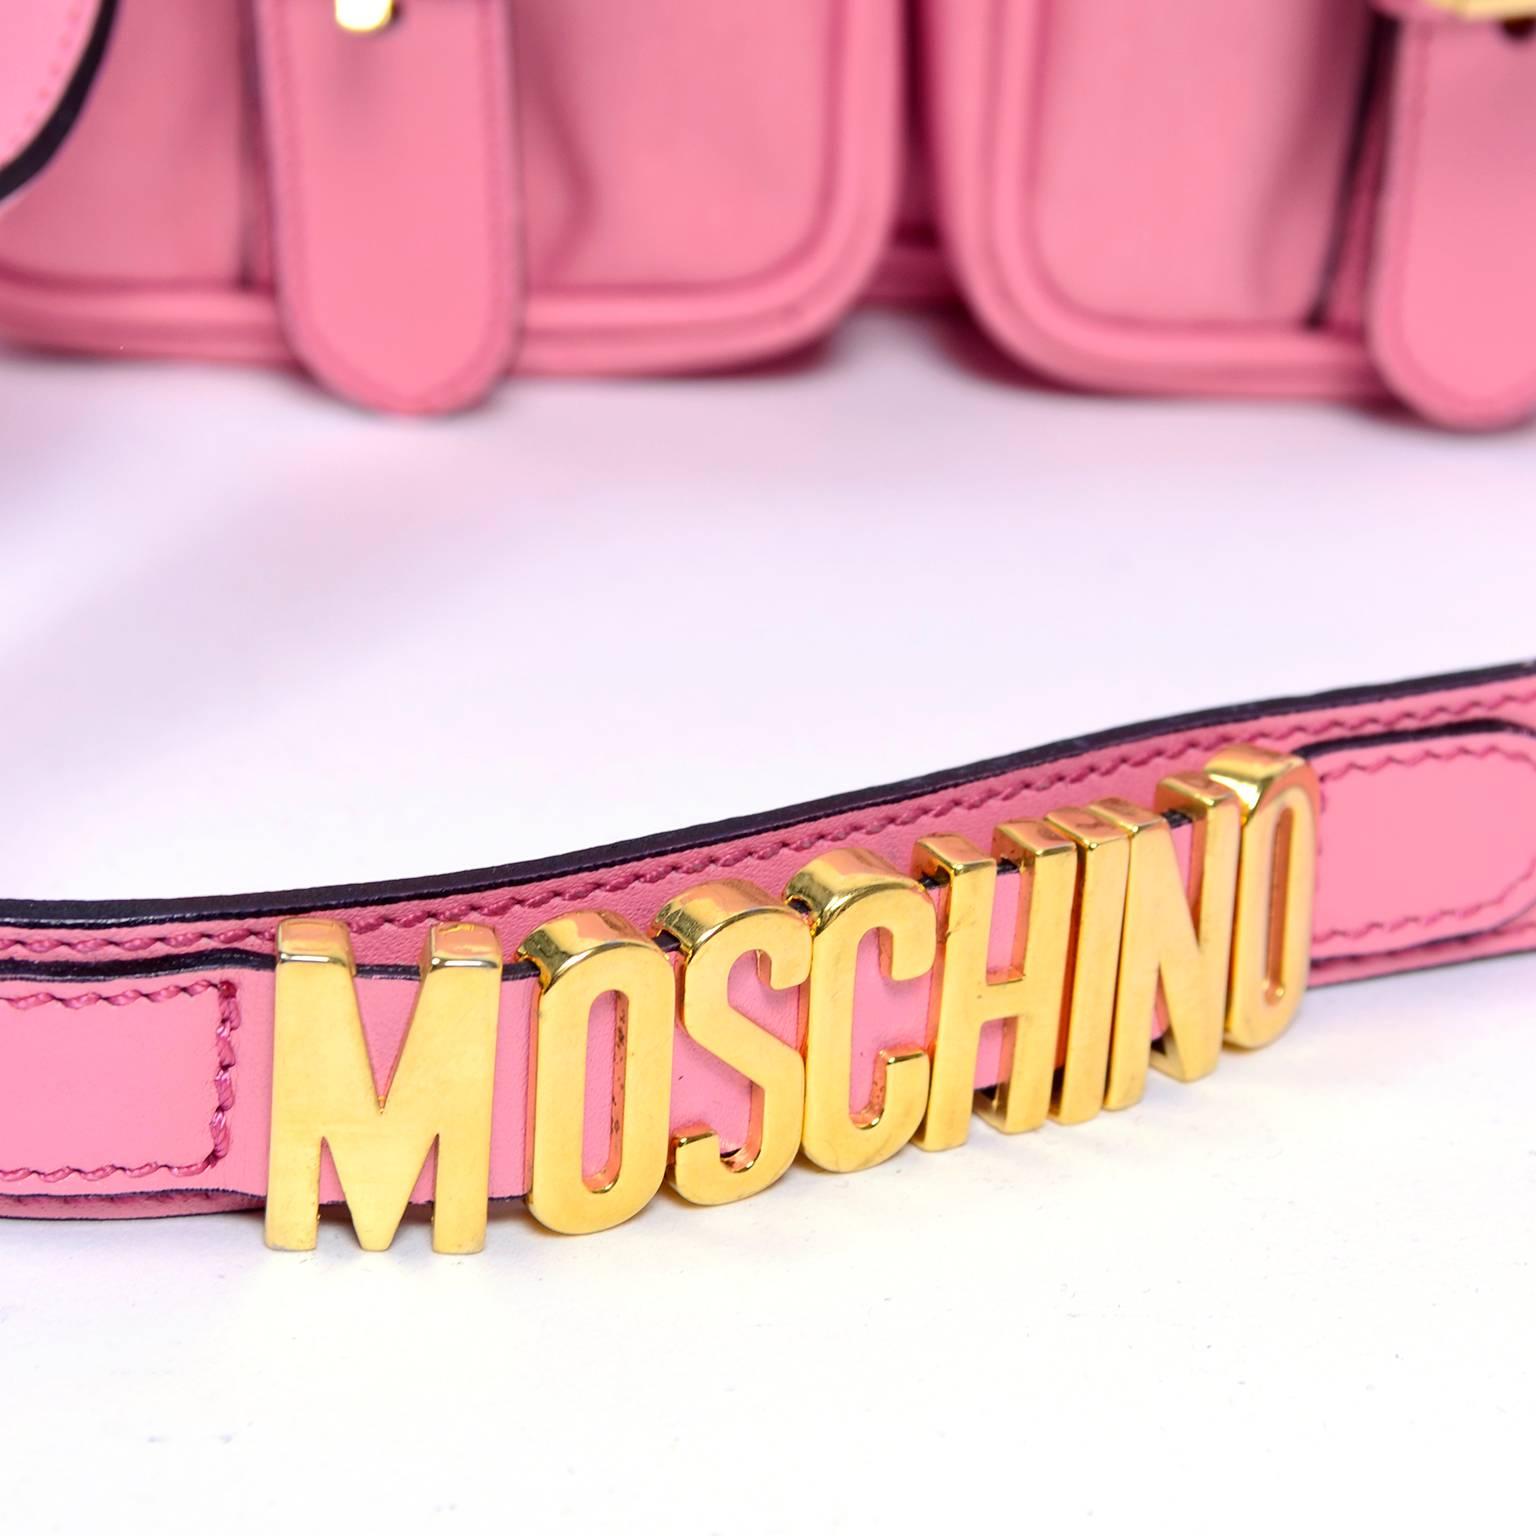 Dies ist eine ikonische rosa Moschino Handtasche mit goldener Hardware. Die obere Klappe lässt sich über den beiden Vordertaschen mit Schnallenimitation auf der Vorderseite einrasten und verleiht der Tasche einen Schulranzen-Look. Diese Nylontasche